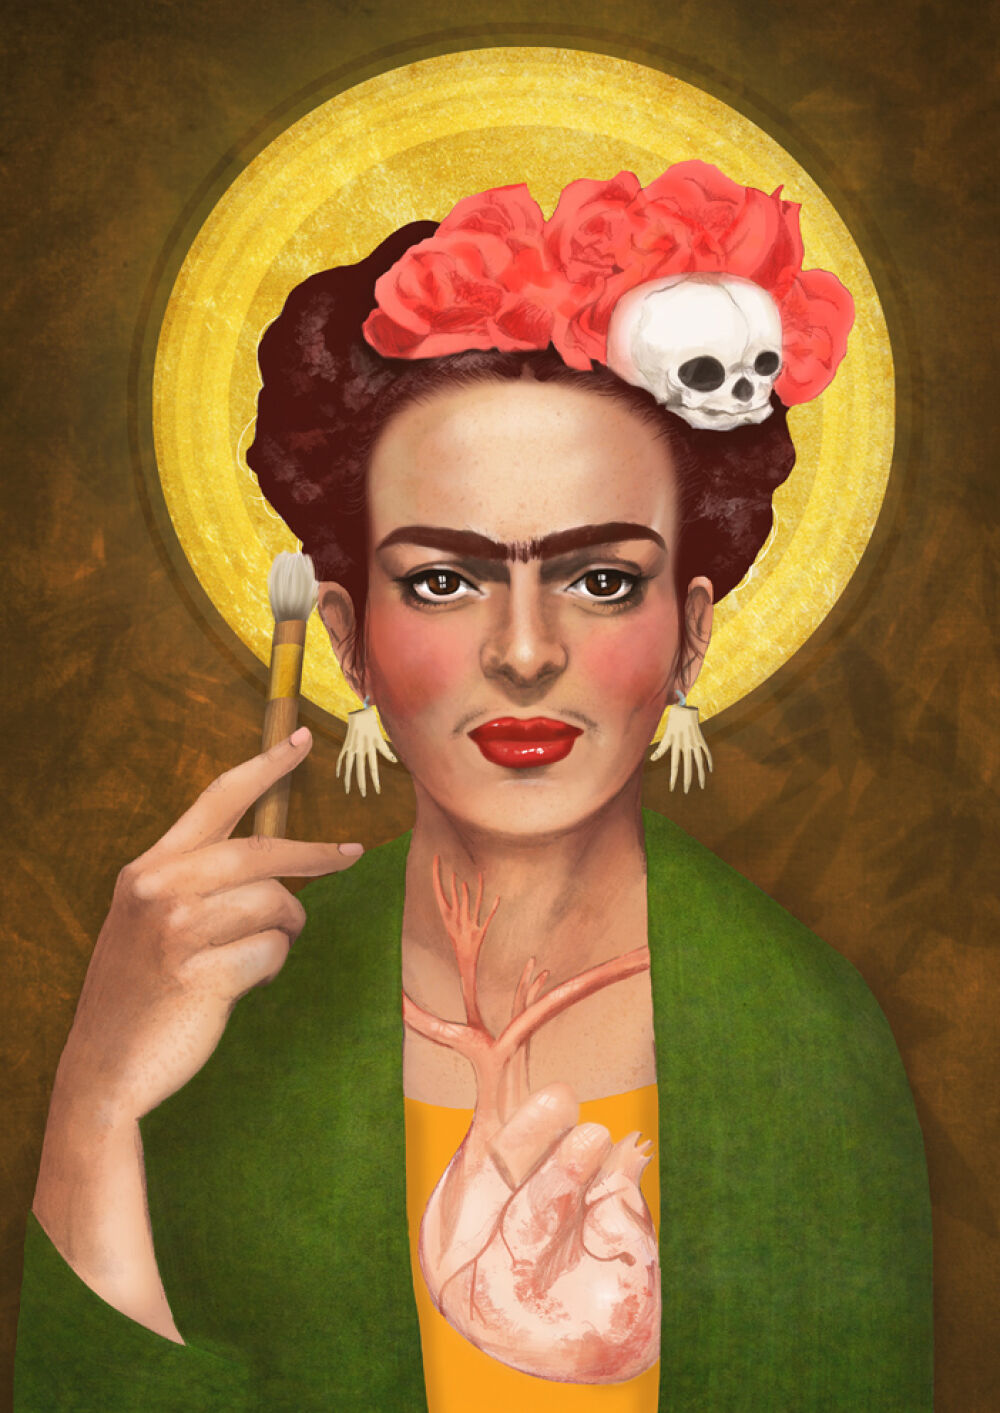 Illustrated portrait by Eplet, Frida Kahlo